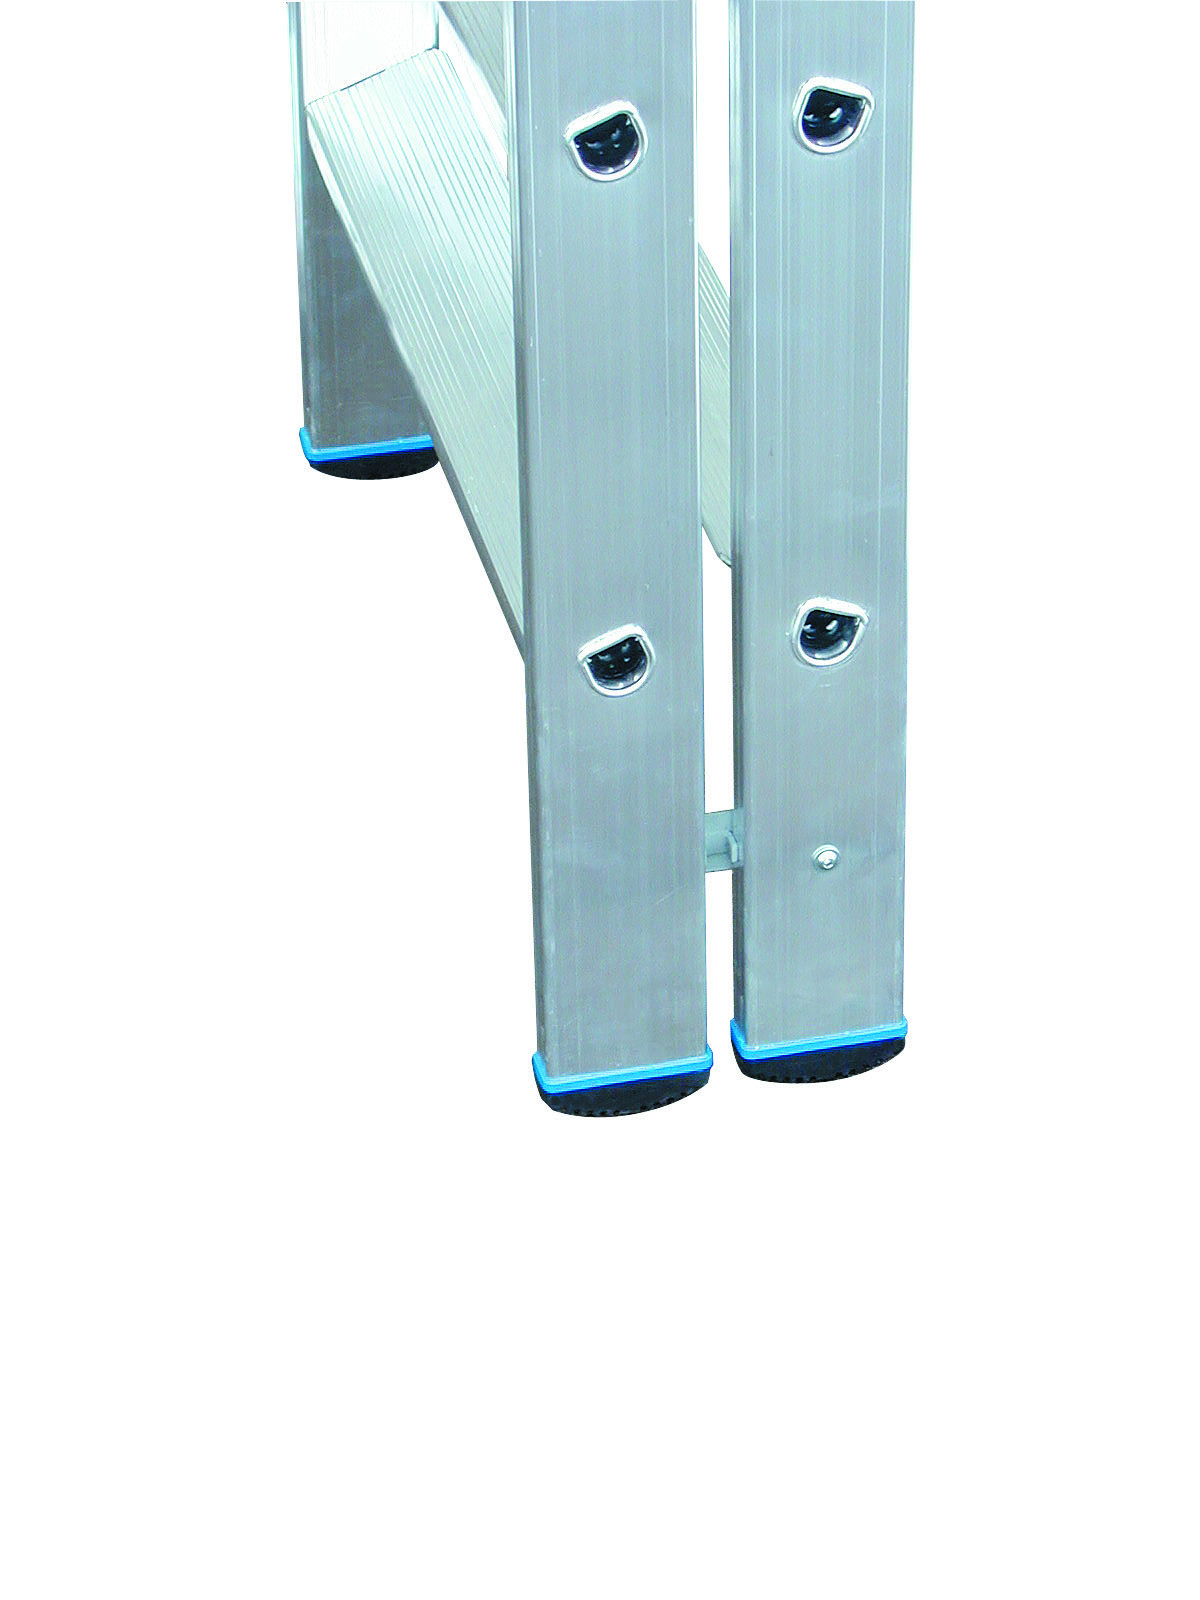 Stabilo Stufen-Doppelleiter 2x3 Sprossen/Stufen